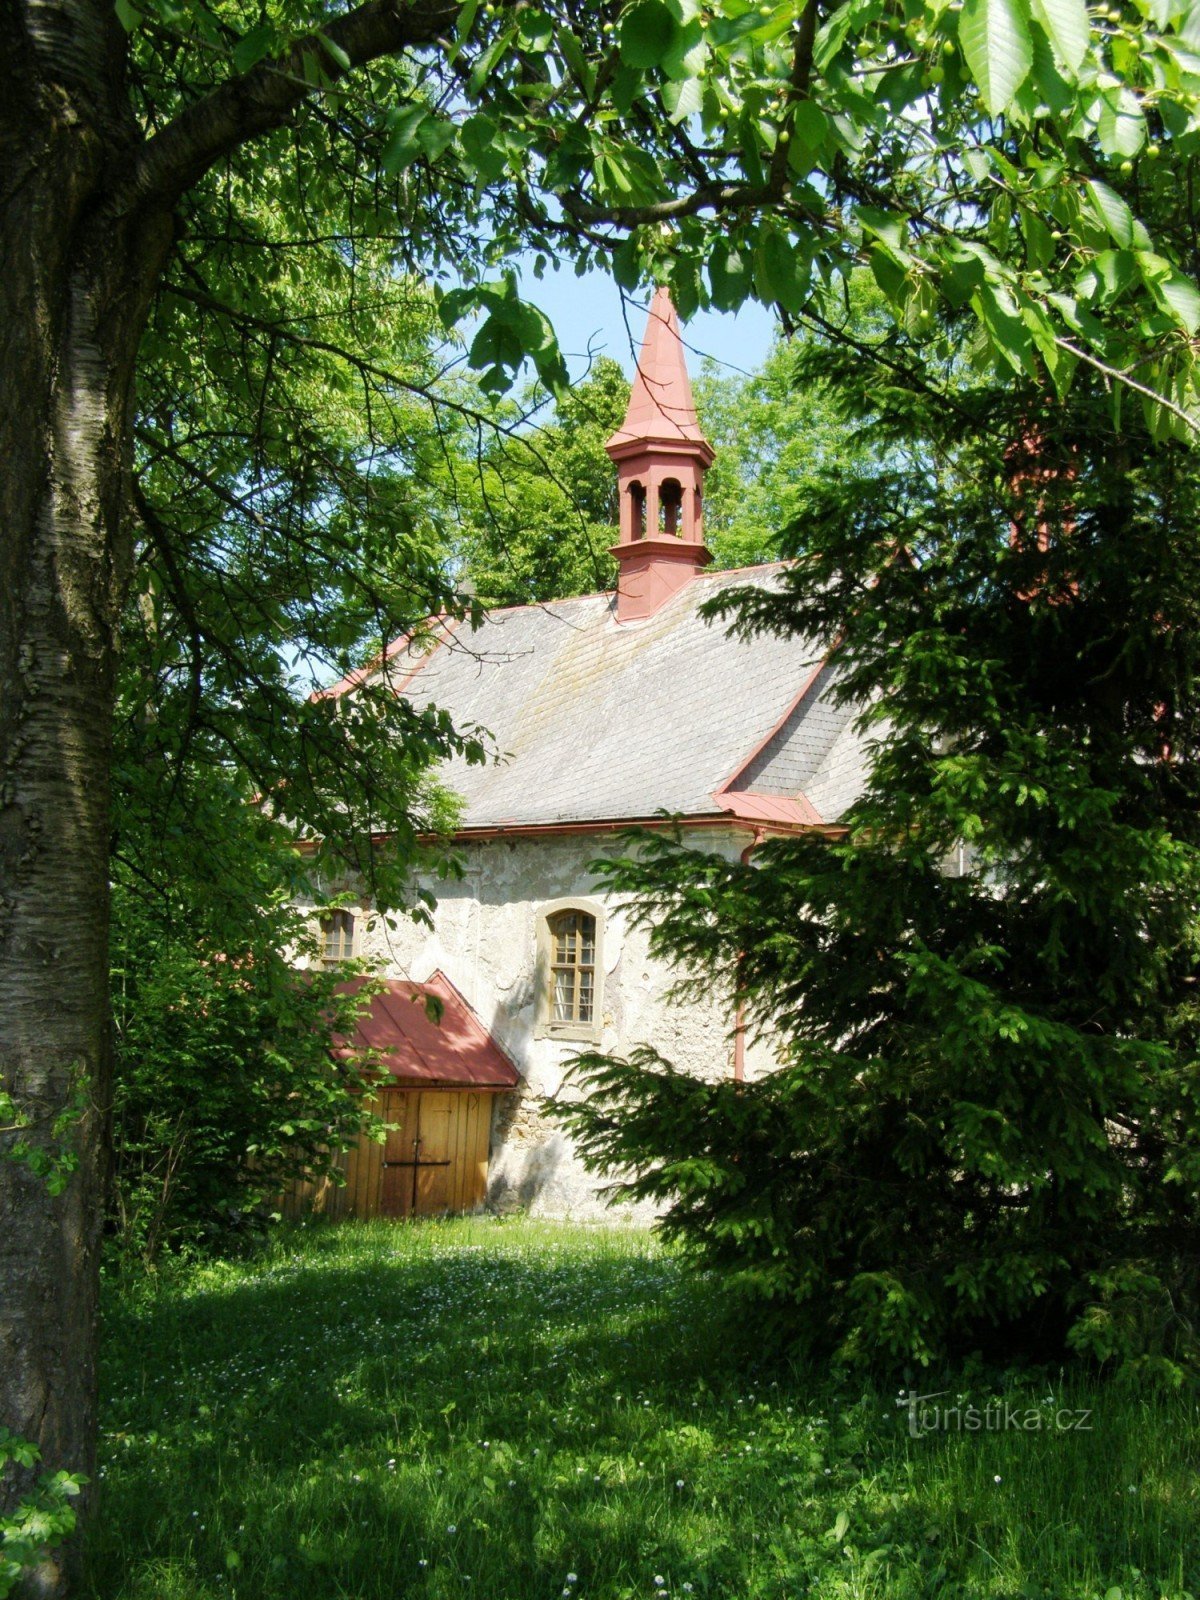 Bělá - church with bell tower